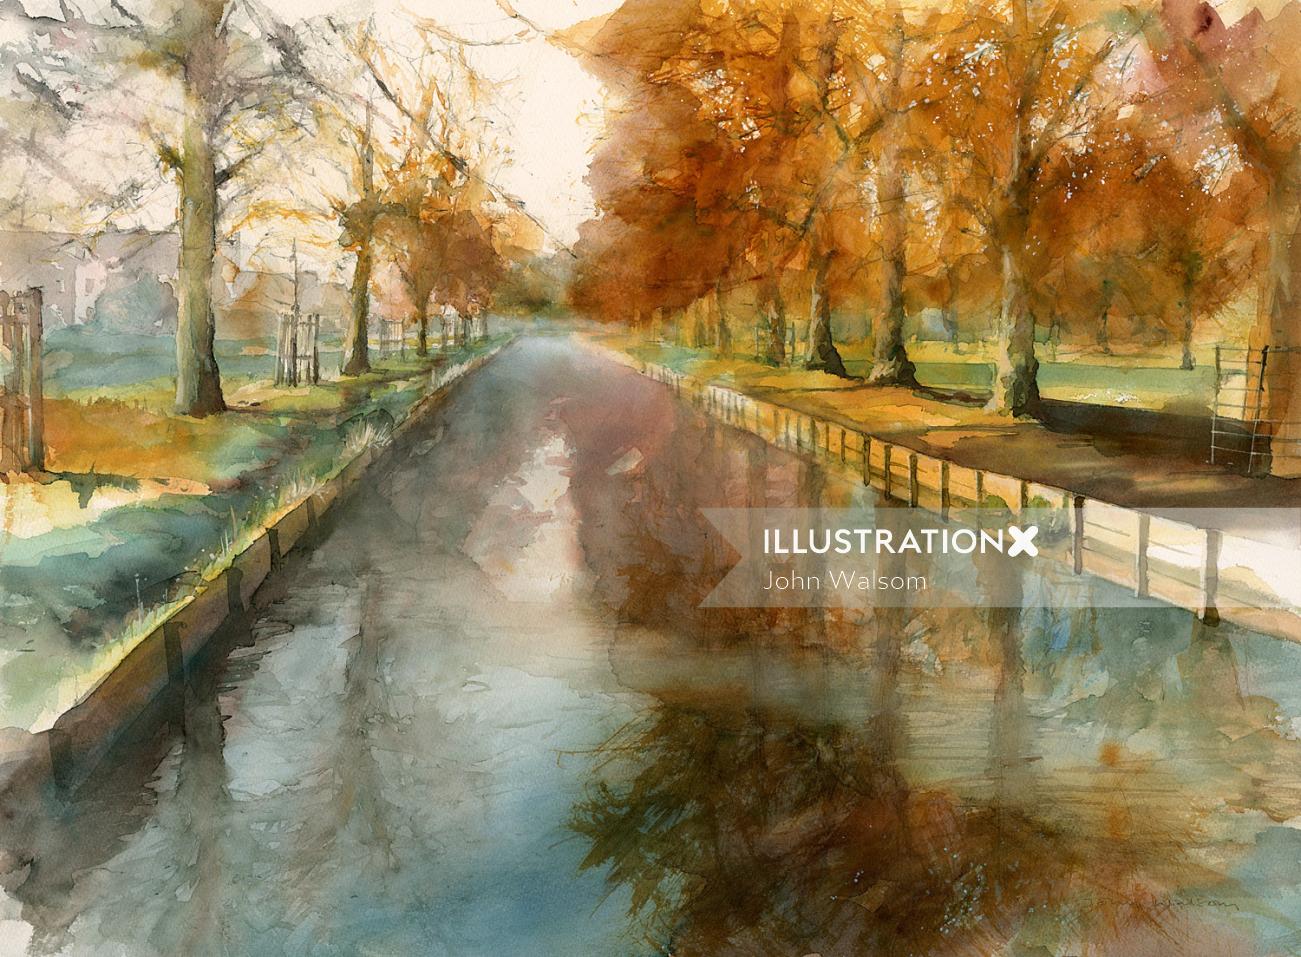 ブッシー パークのポーターズ ストリームを描いた秋のシーン